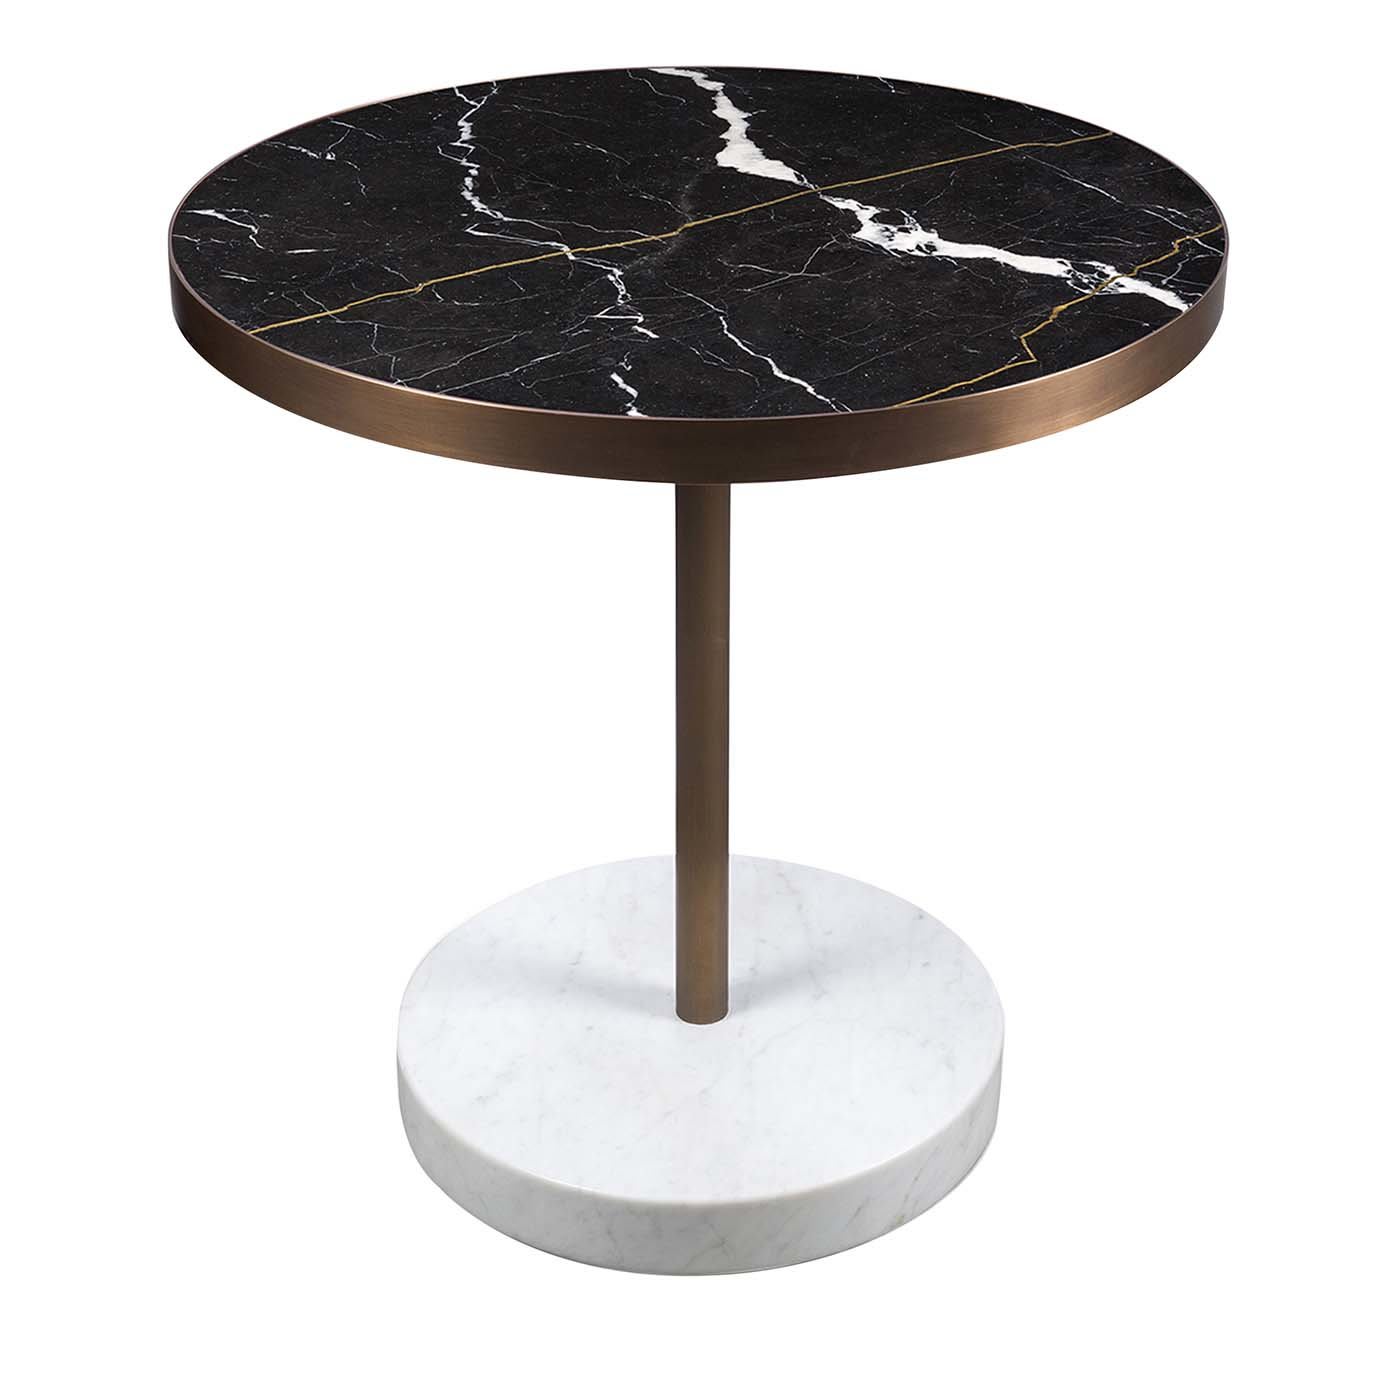 René Bistro Table in Nero Marquinia Marble by Piero Lissoni - Salvatori